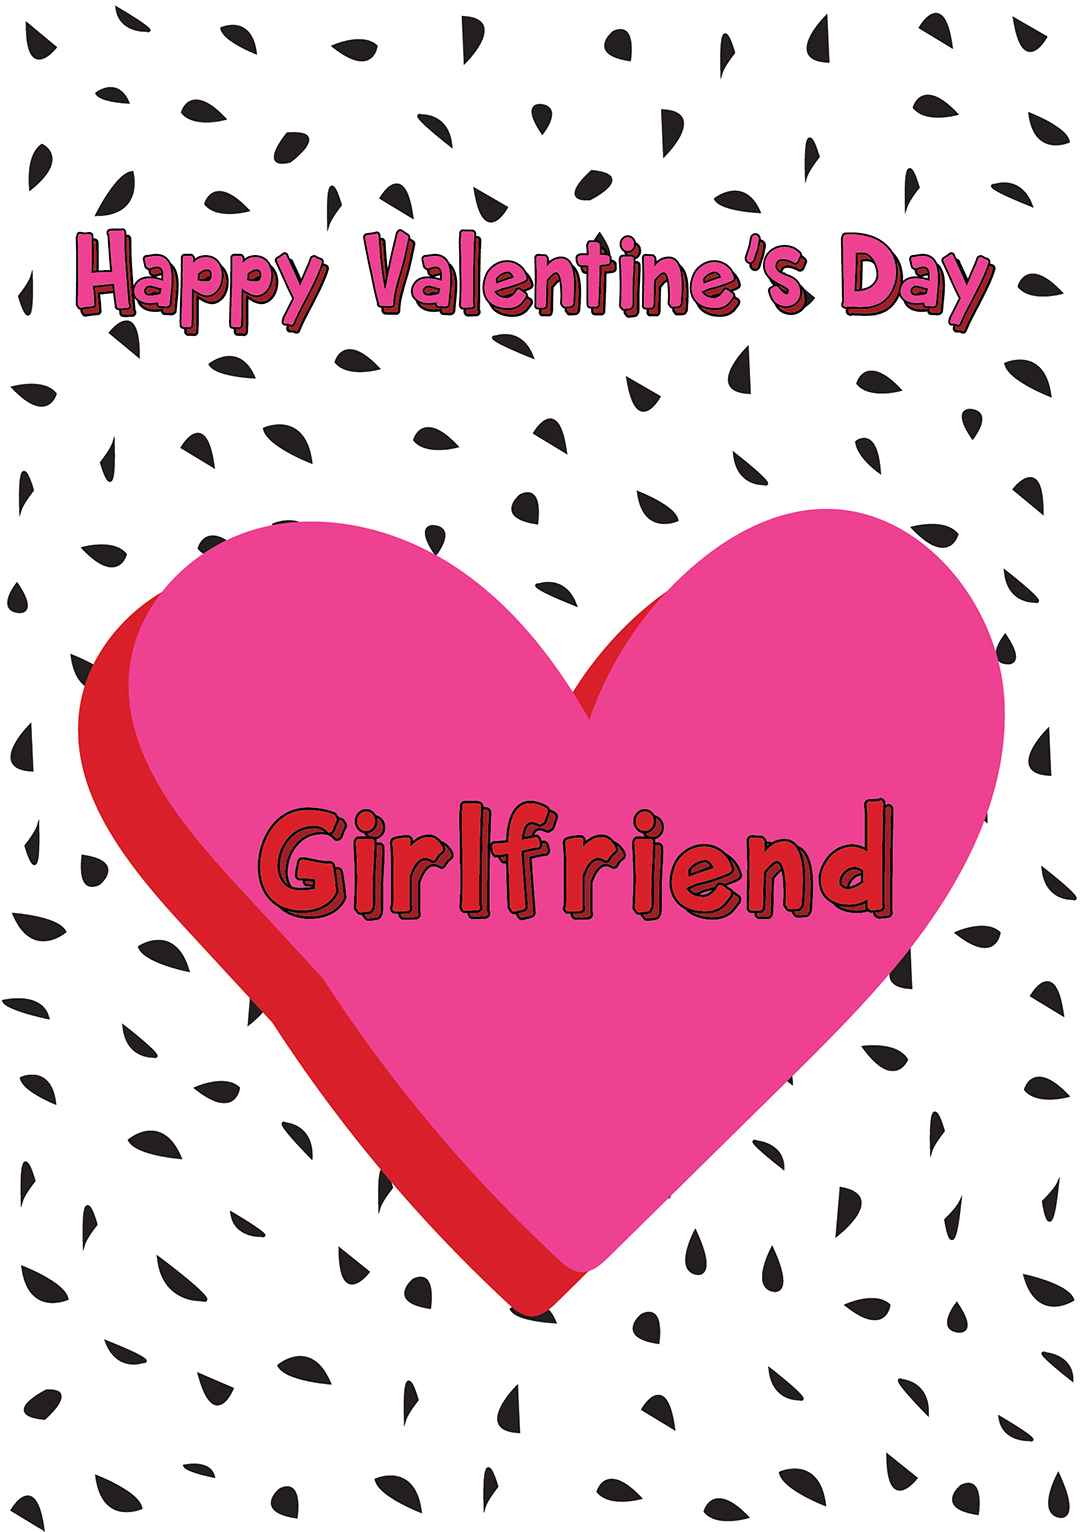 Happy Valentines Day Girlfriend - Card